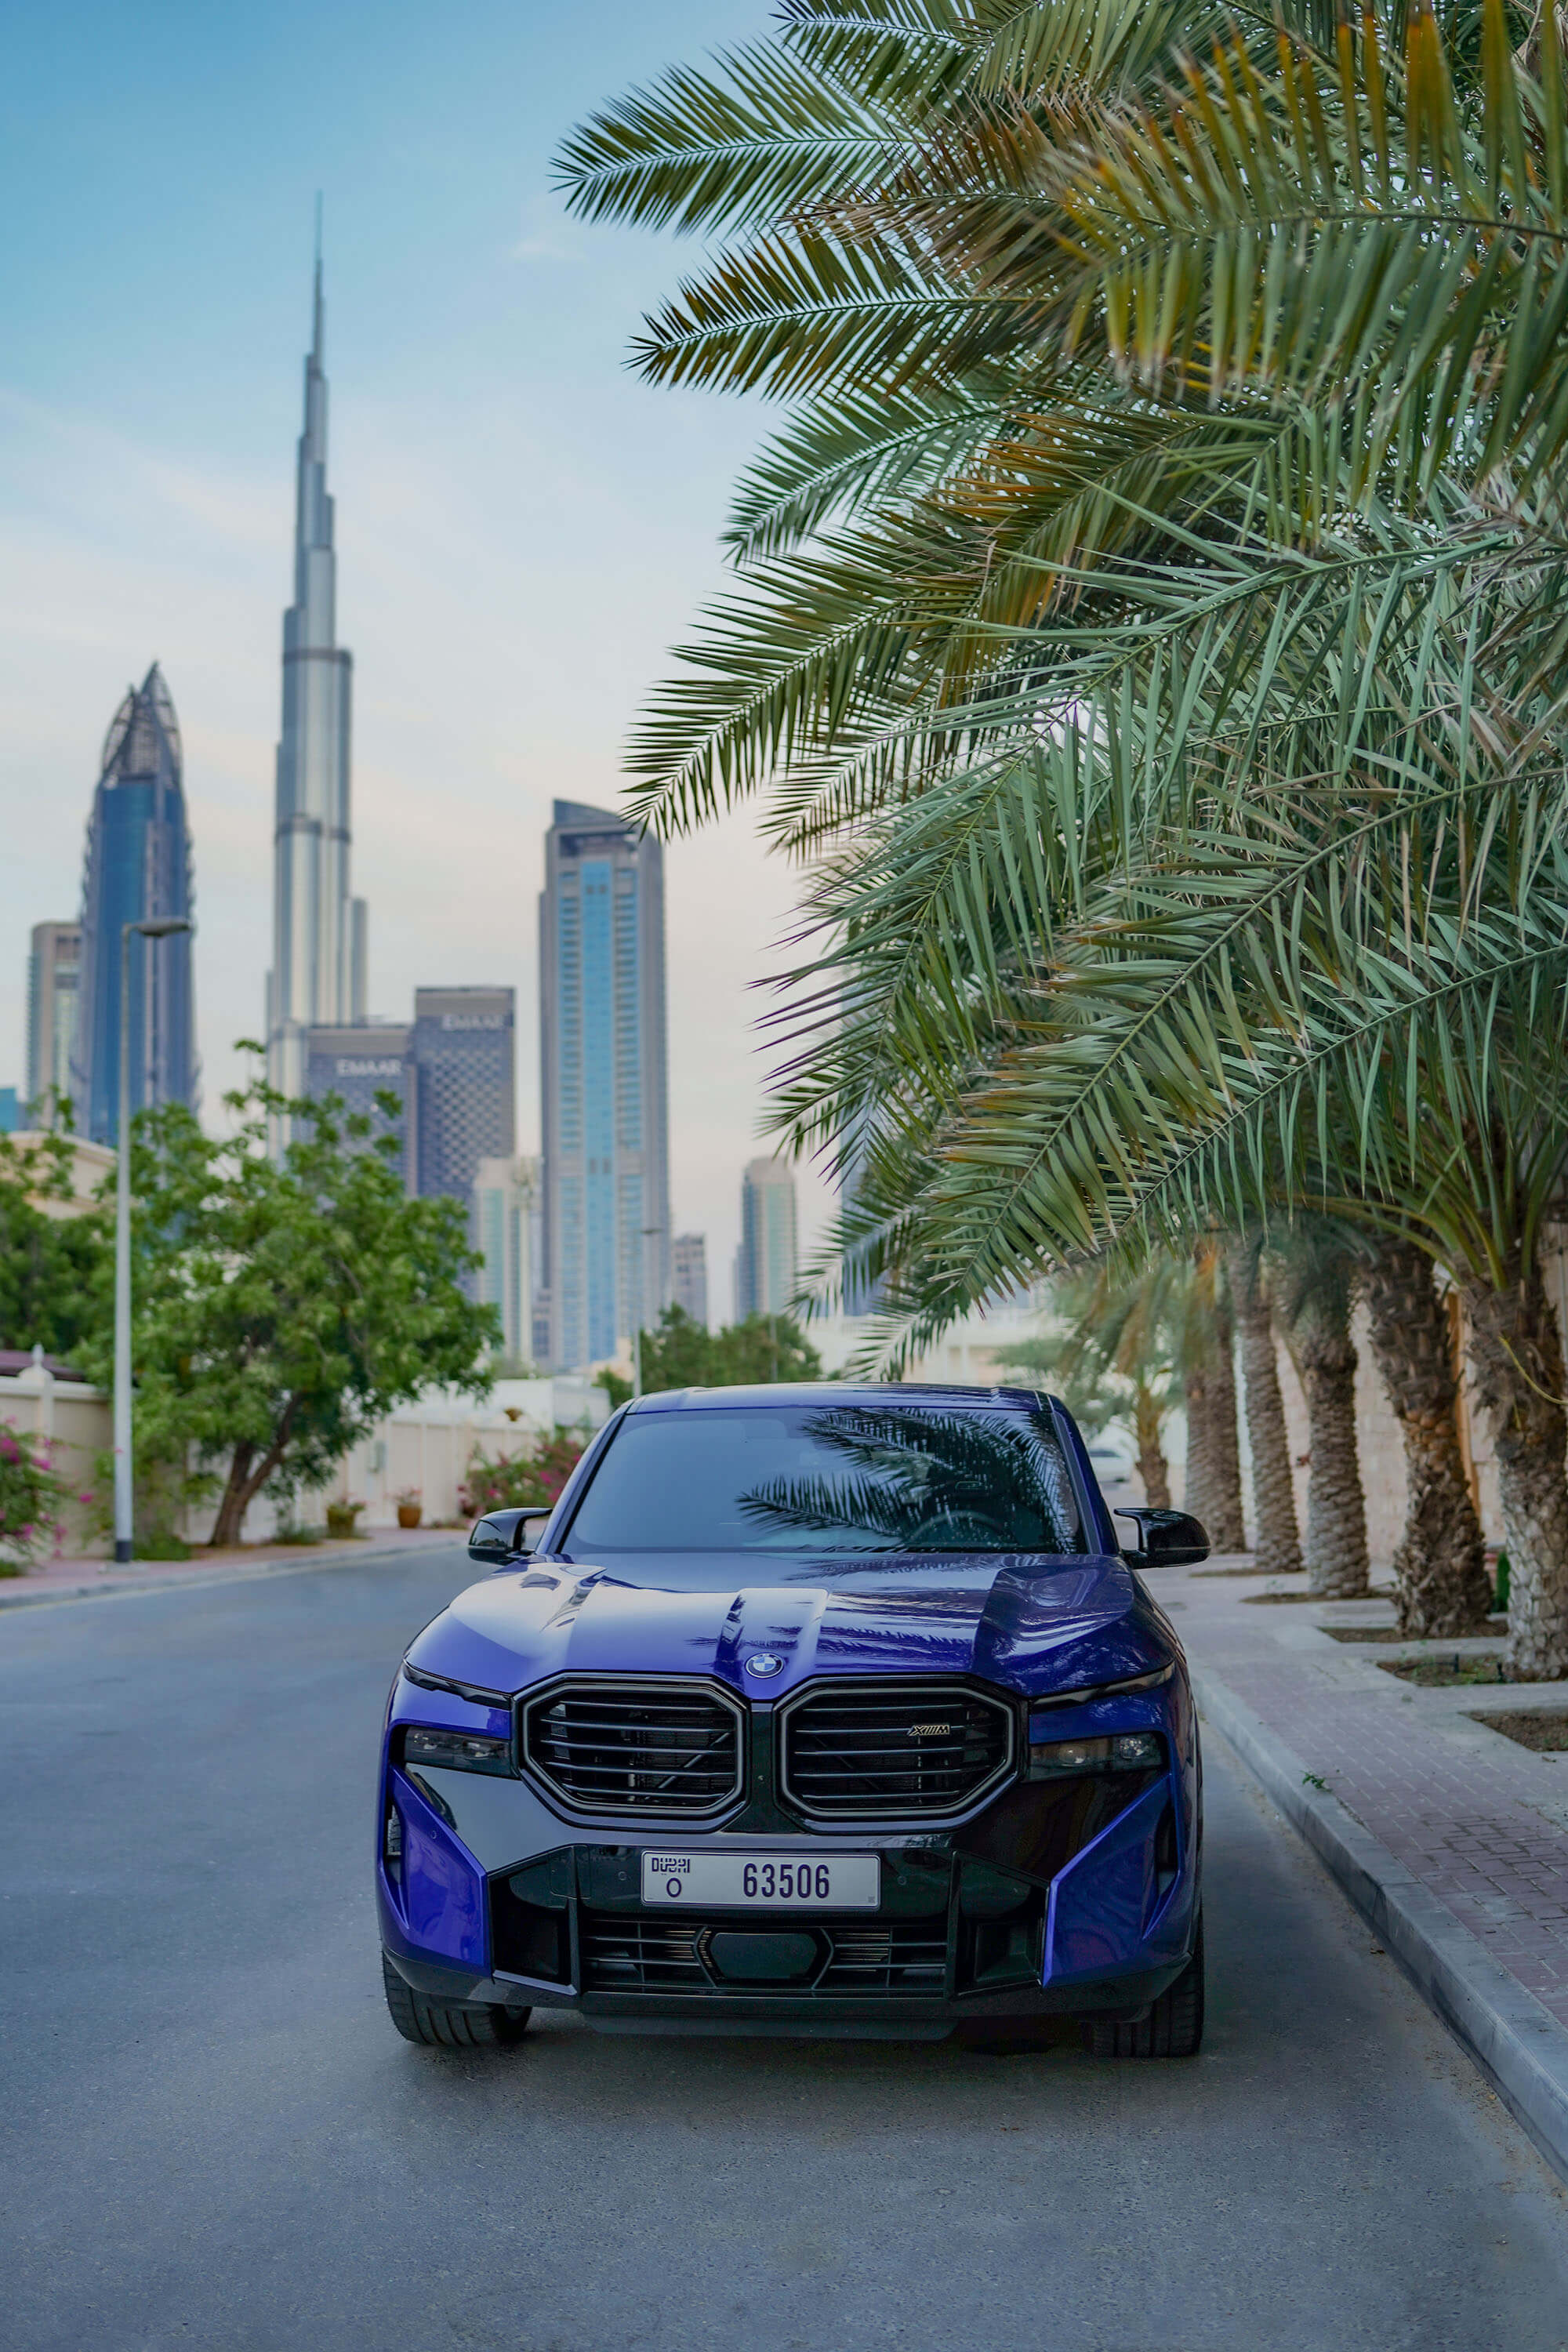 Hyr BMW XM i Dubai